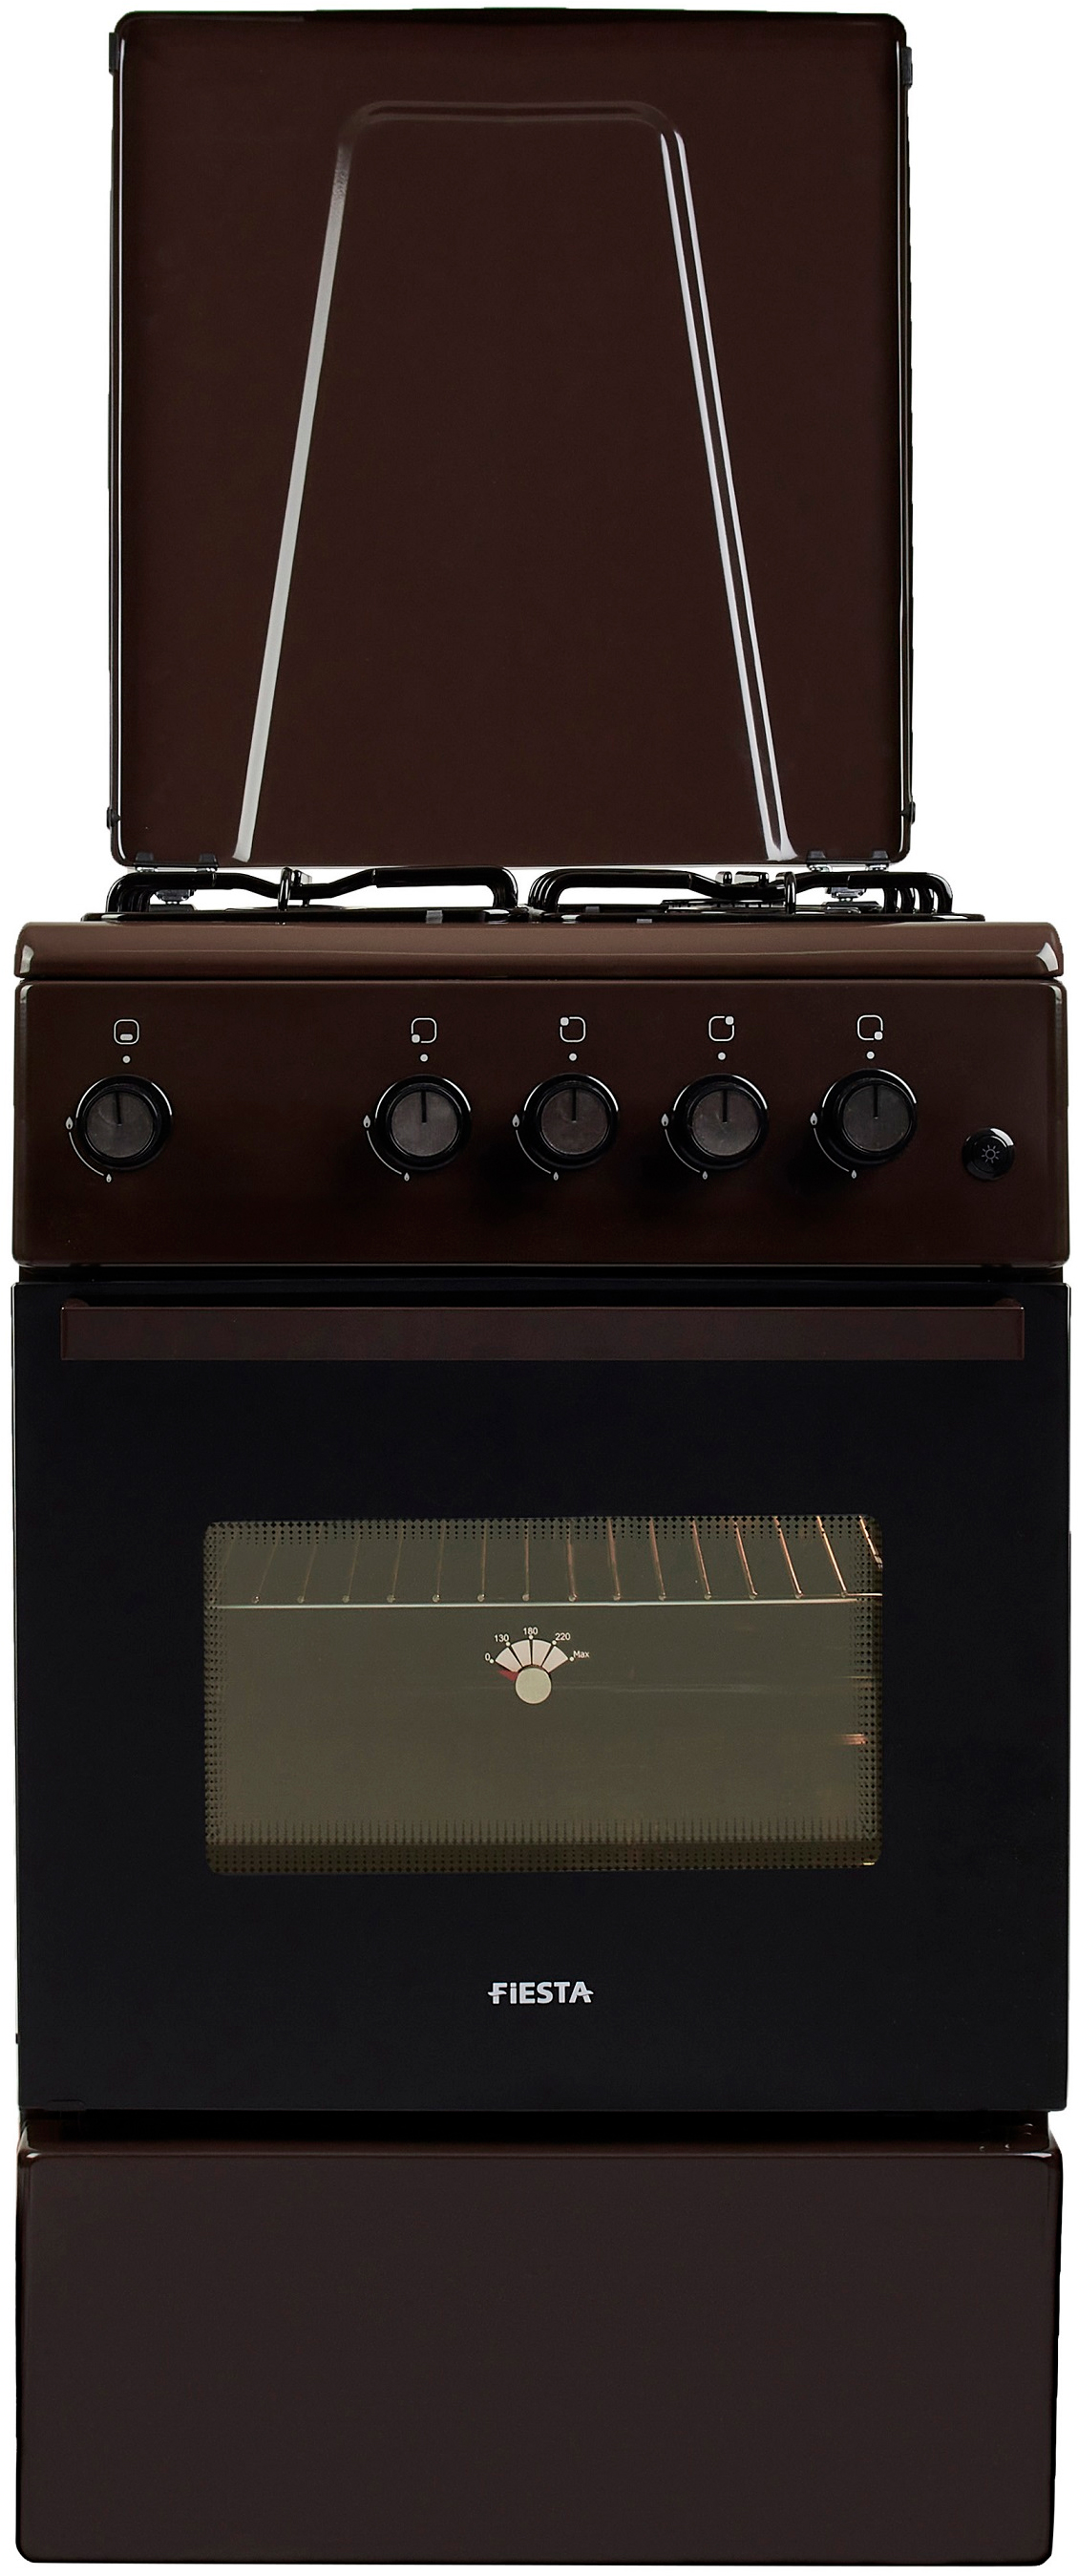 Кухонная плита Fiesta G 5403 SD-B в интернет-магазине, главное фото